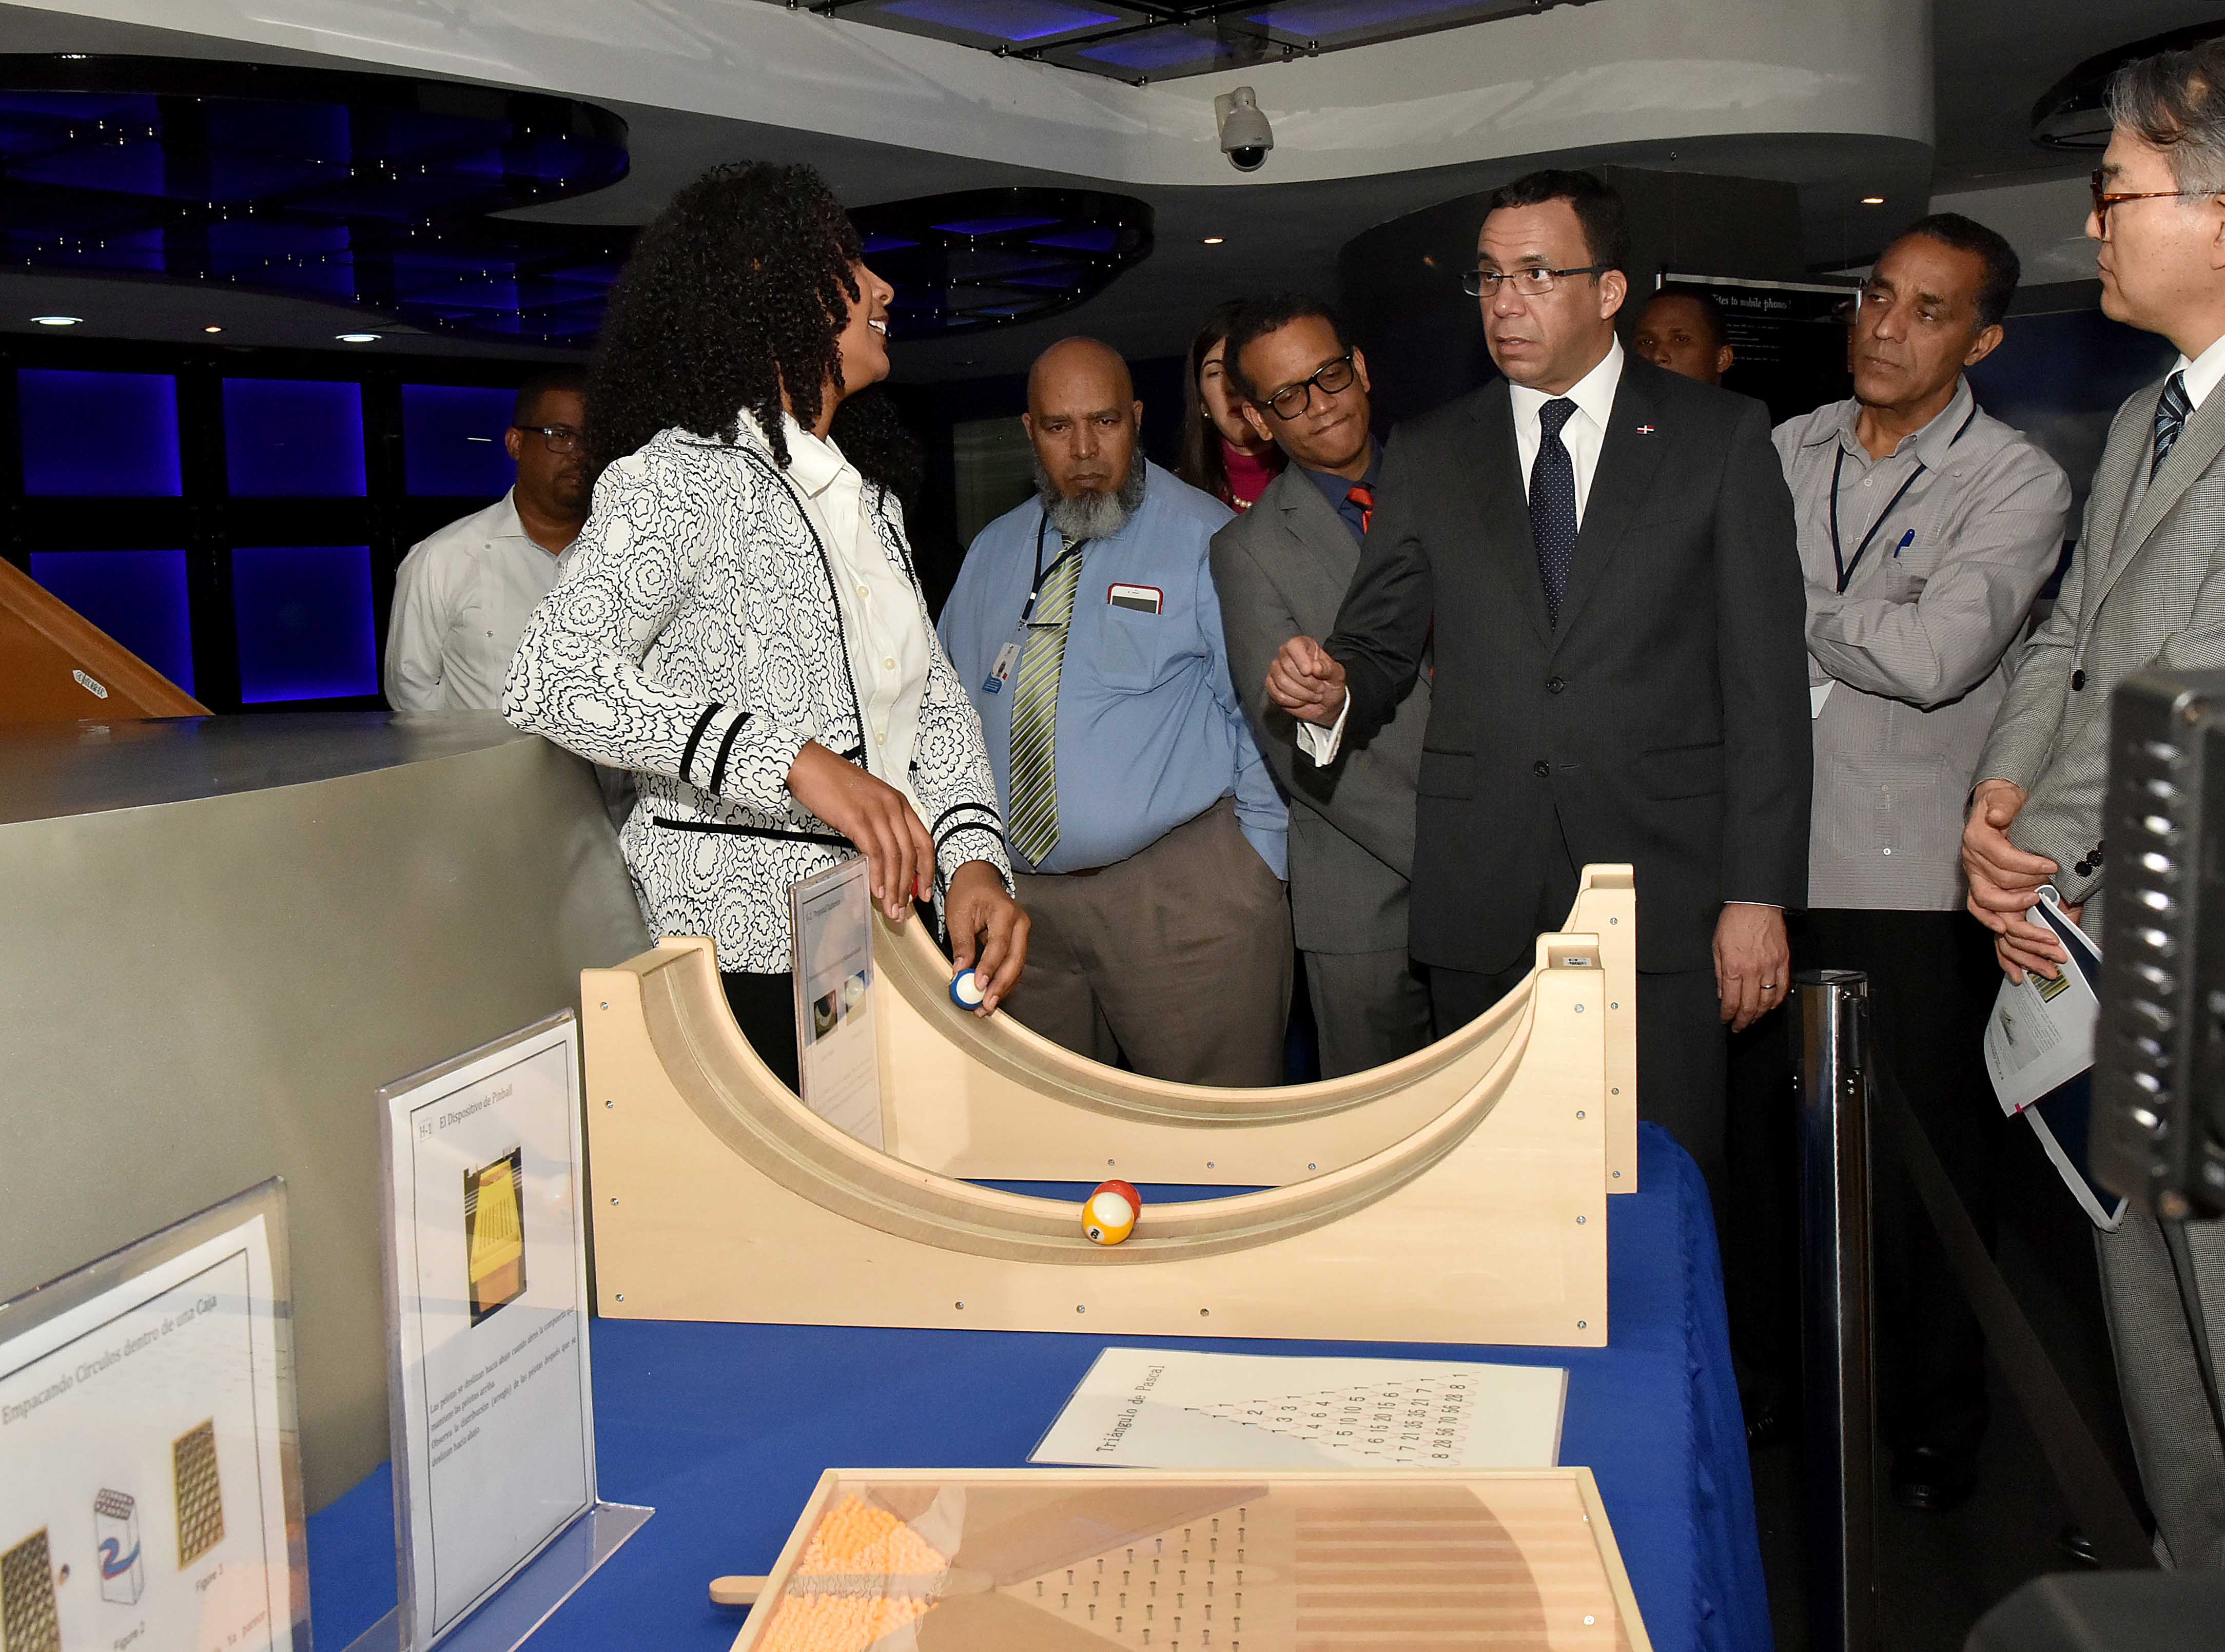  imagen Ministro Andrés Navarro junto a embajador de Japón en RD y miembros de su gavinete, recorren museo de Matemáticas  